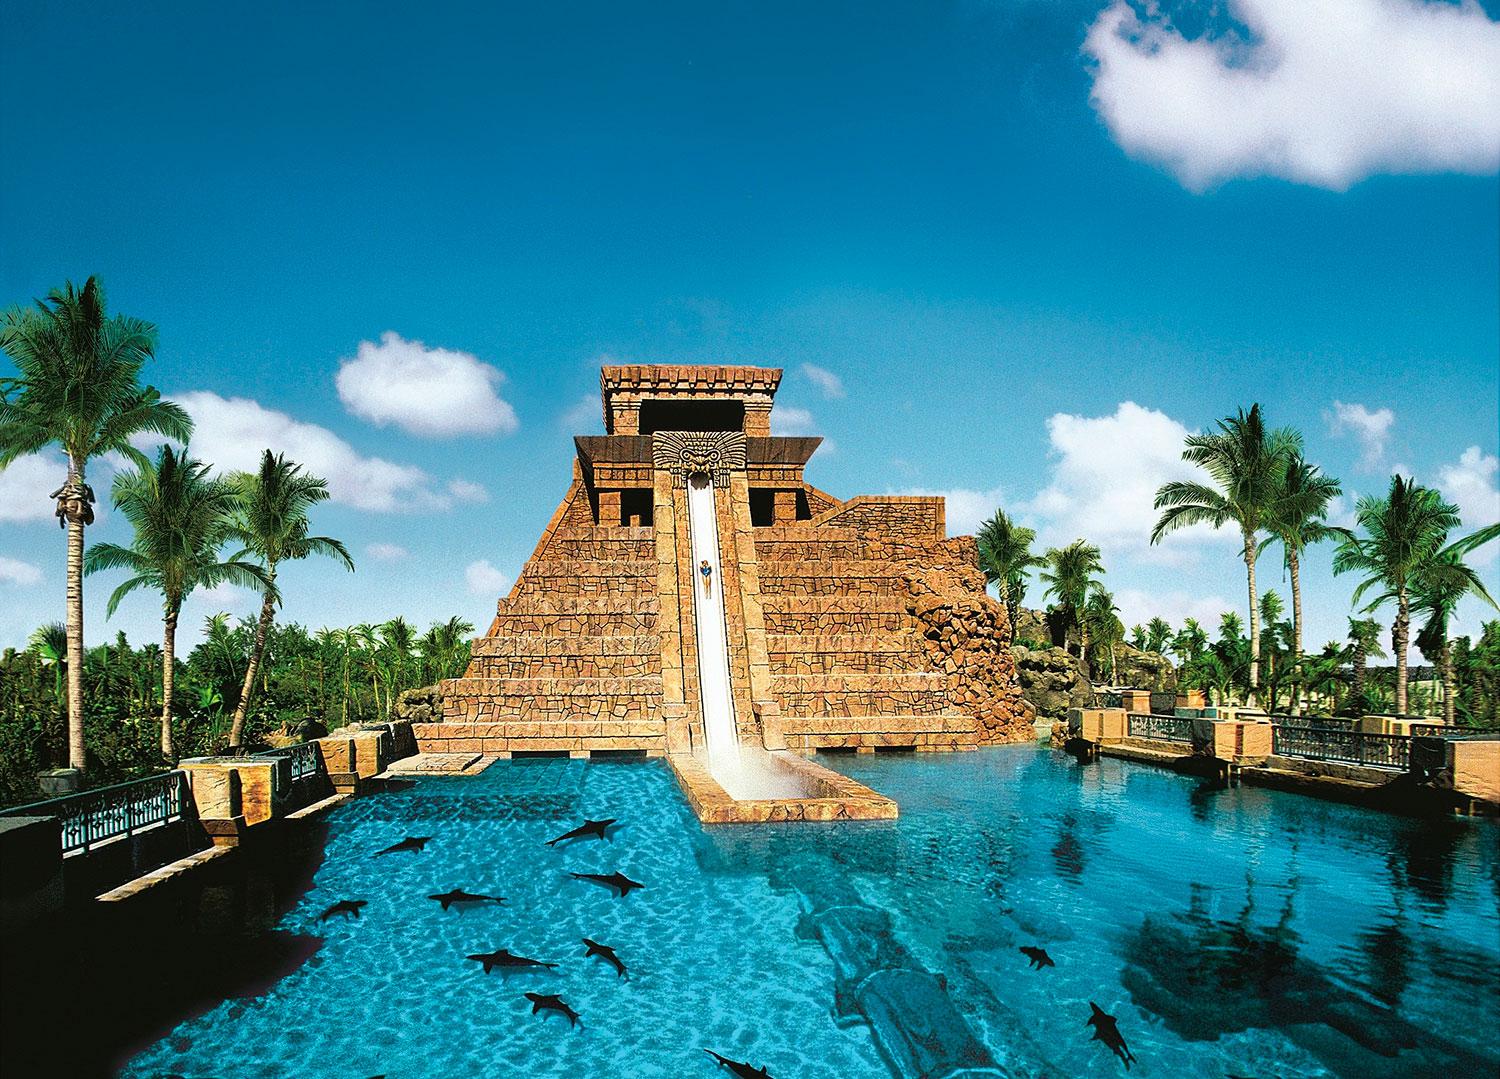 5. THE REEF ATLANTIS, BAHAMAS Drivs av samma företag som Dubai Atlantis The Palm. Känns som en mindre stad med över 3400 rum och sviter samt 40 restauranger, barer och lounger. Äventyrsbadet Aquaventure består av elva pooler och en speciellt känd vattenrutschbana, som störstar ner från ett mayatempel. Hotellrum från cirka 2300 kr/natt.